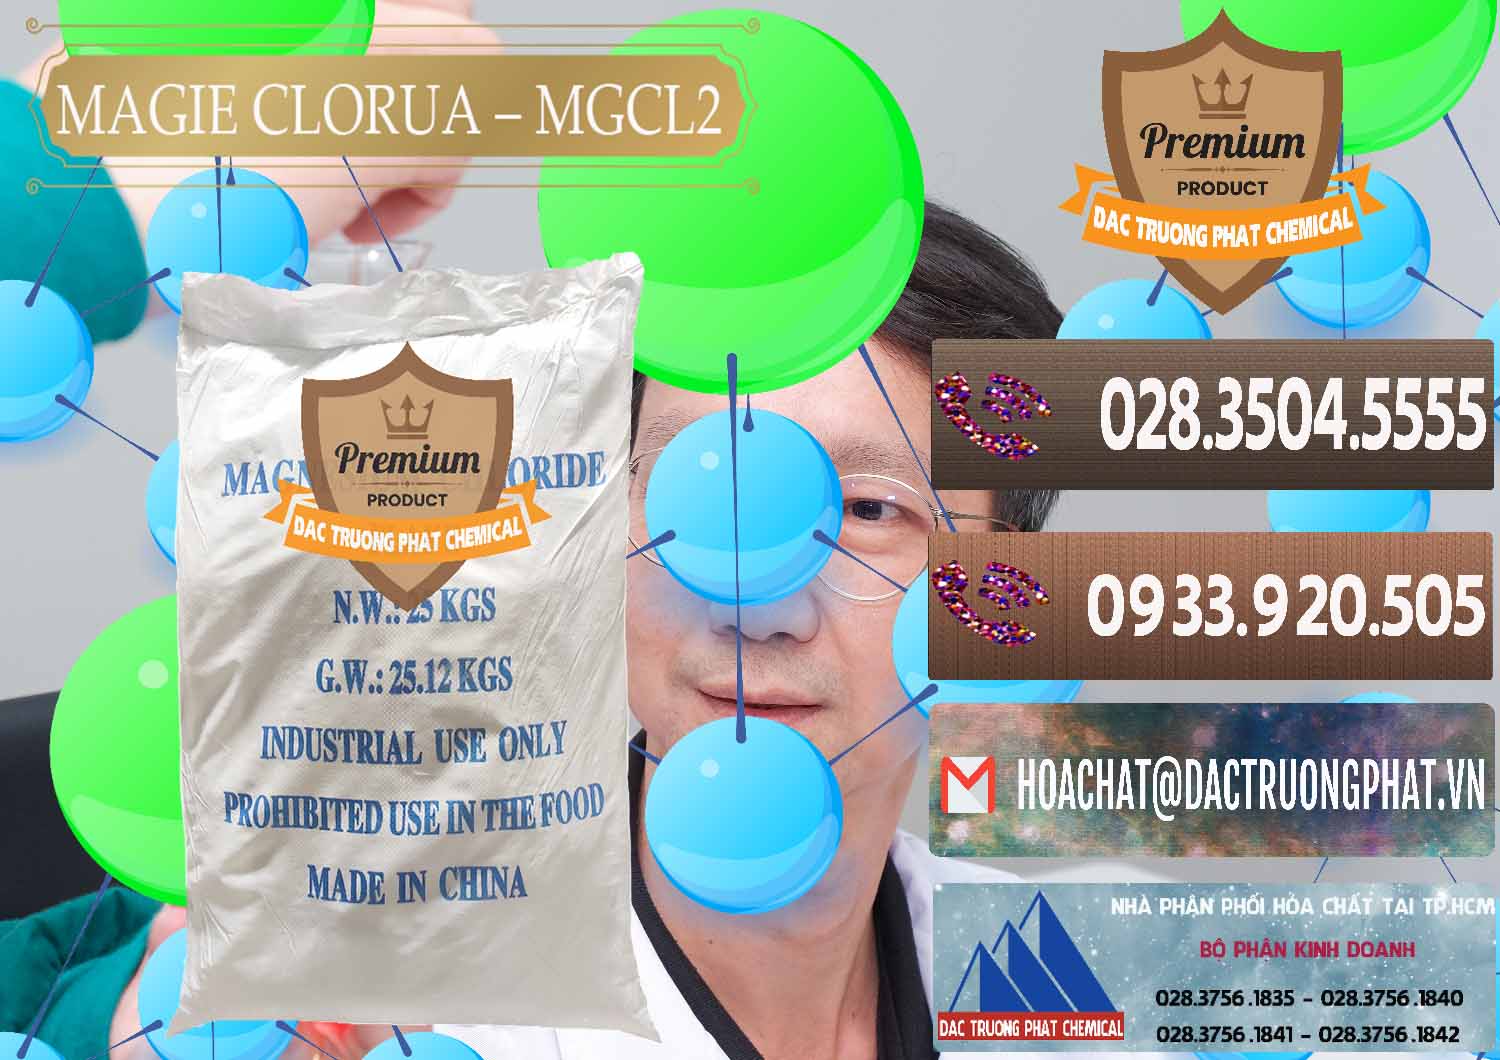 Công ty chuyên nhập khẩu & bán Magie Clorua – MGCL2 96% Dạng Vảy Trung Quốc China - 0091 - Công ty kinh doanh và phân phối hóa chất tại TP.HCM - hoachatviet.net